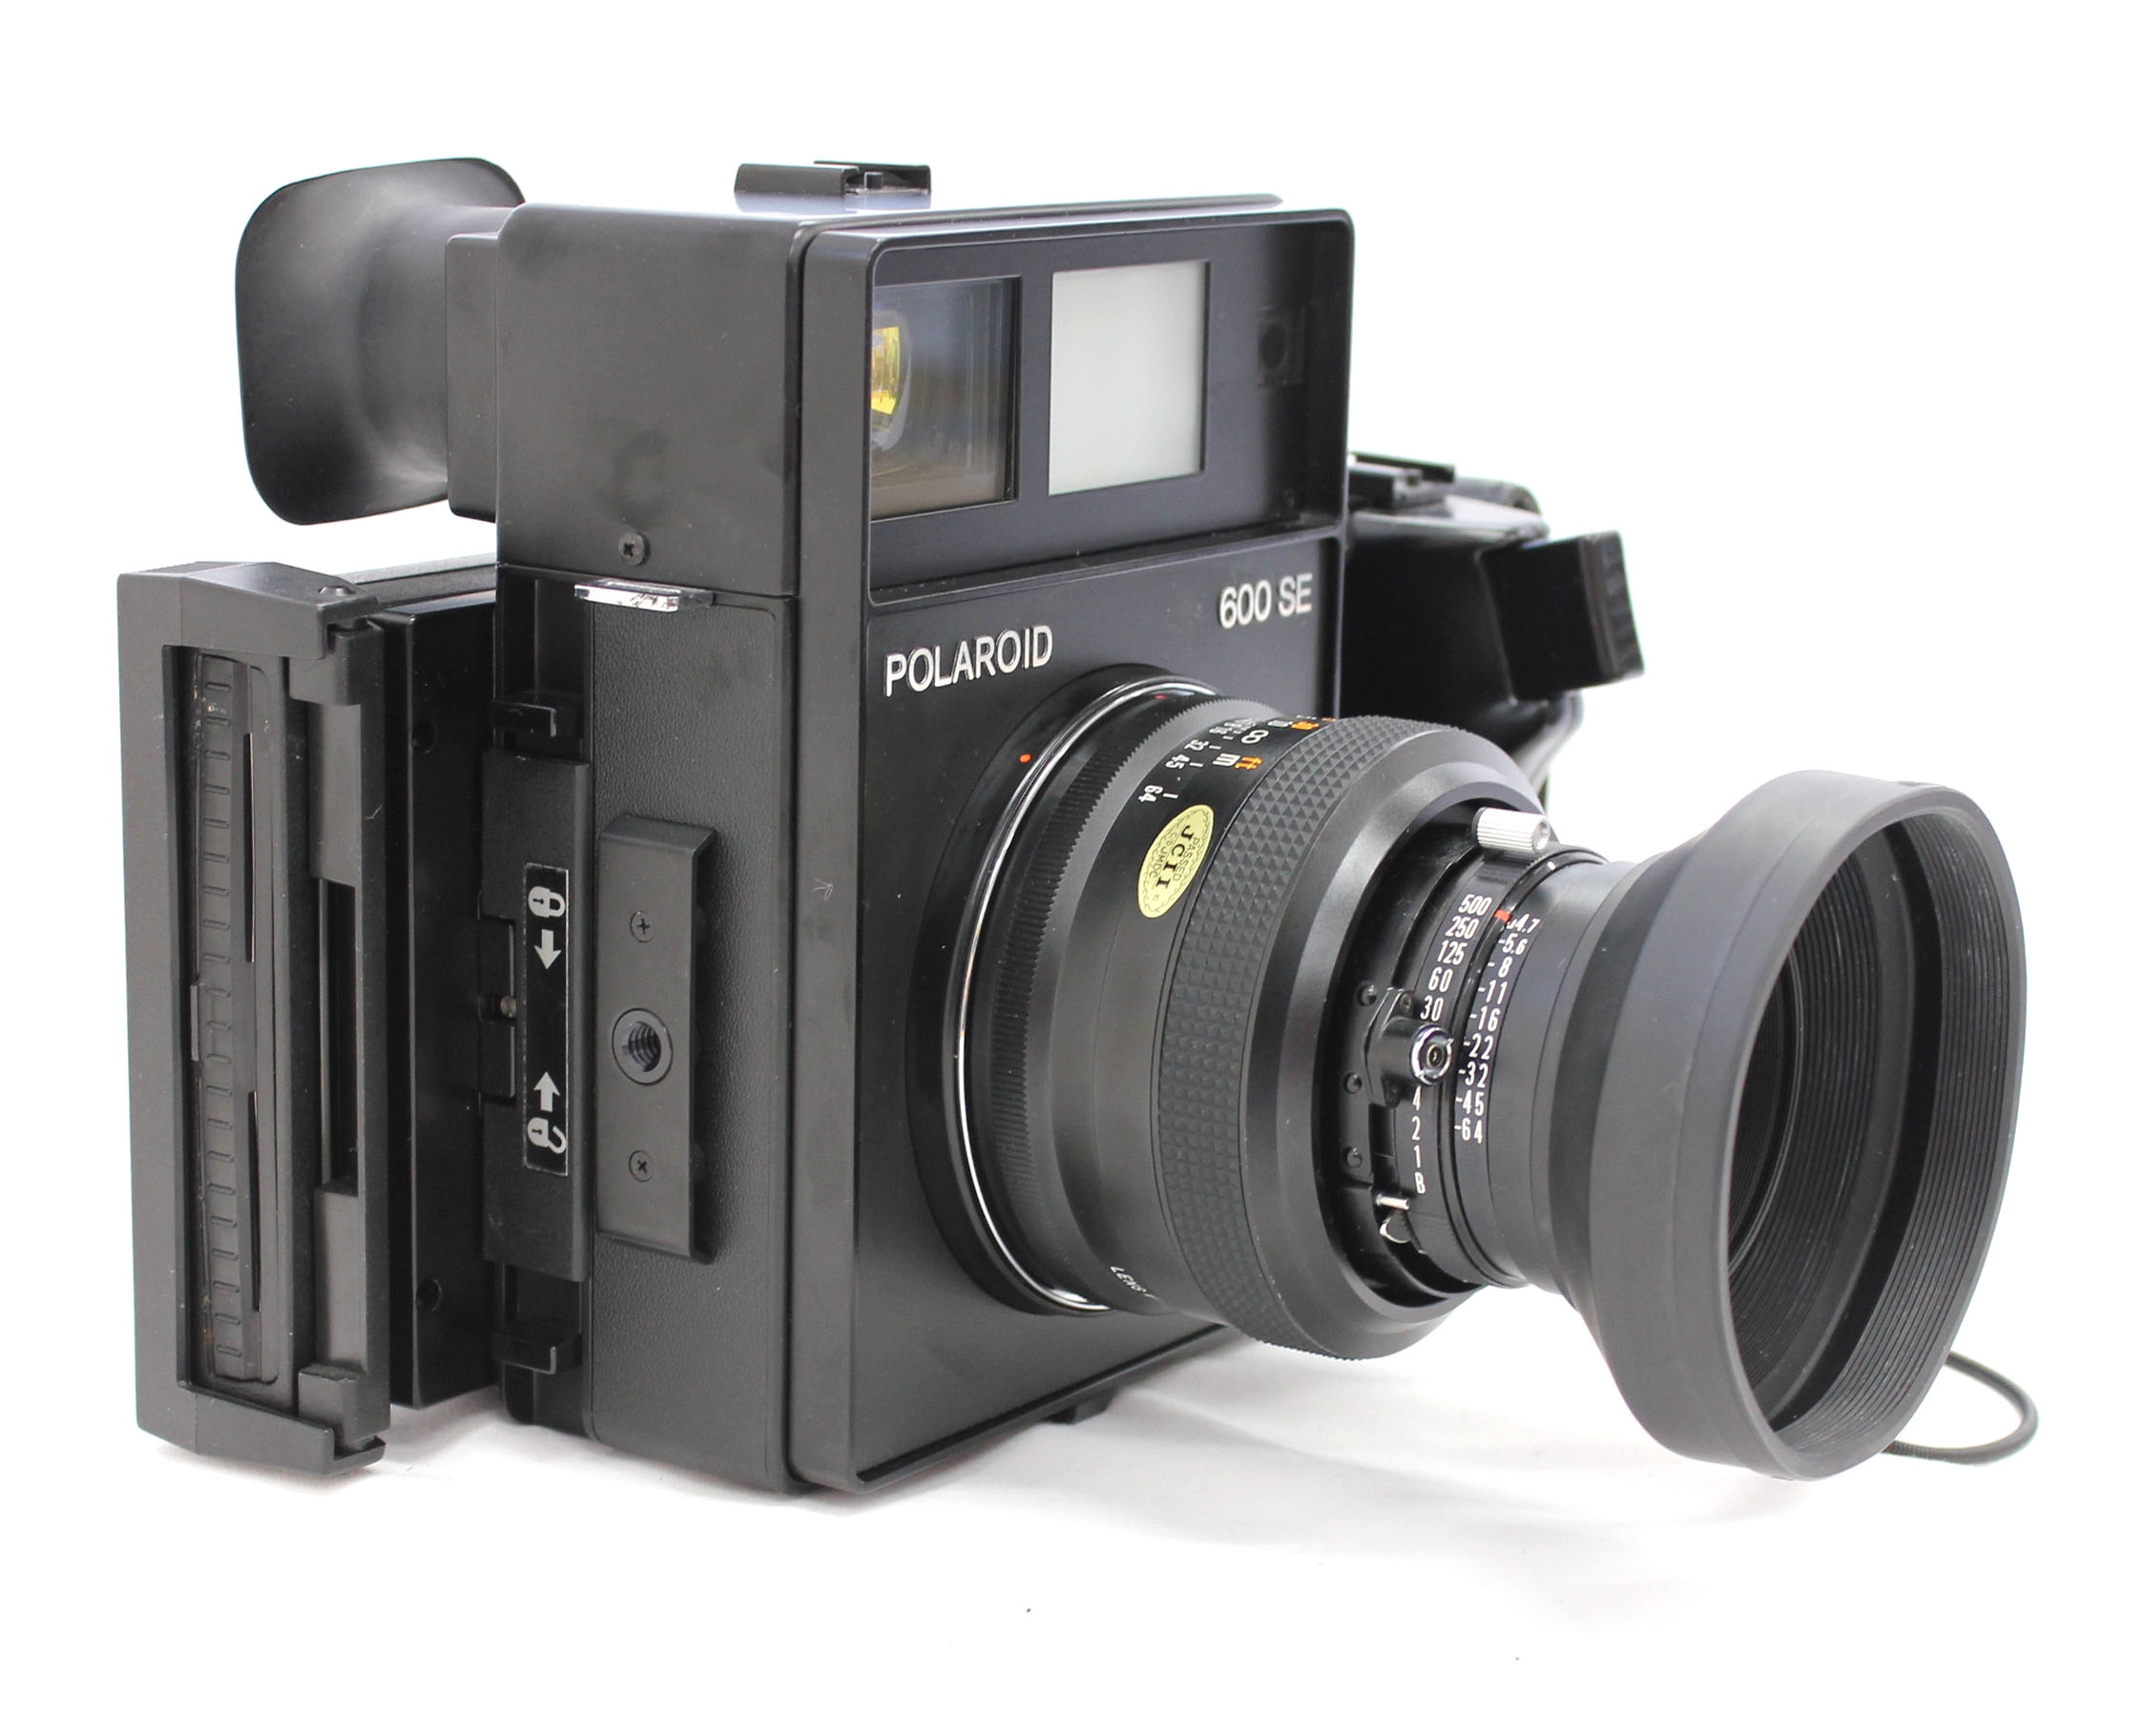  Polaroid 600SE Instant Camera w/ Mamiya 127mm F/4.7 Lens and Polaroid Back from Japan Photo 1